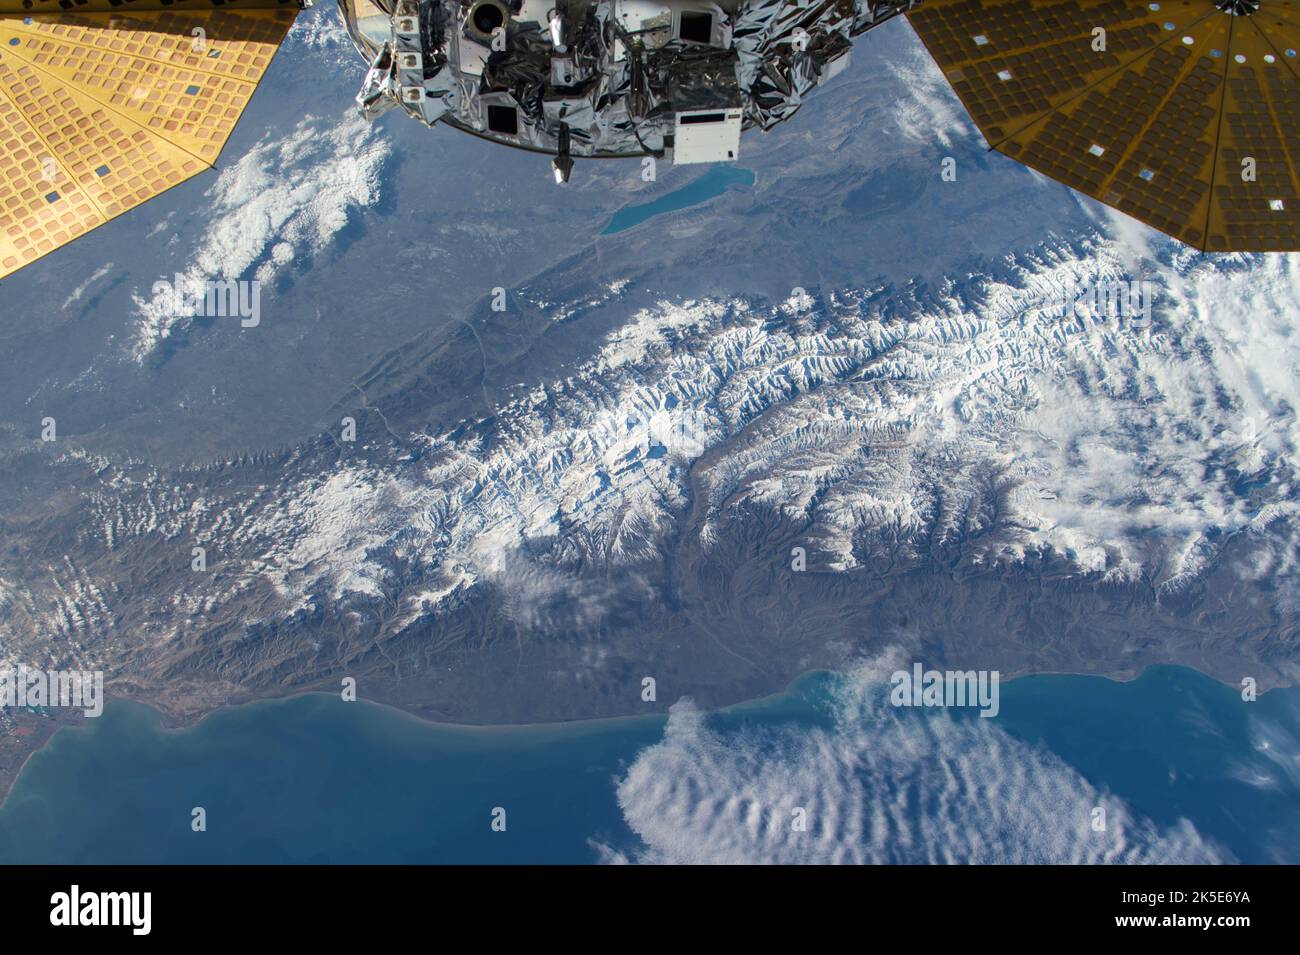 Une observation de la Terre prise de la Station spatiale internationale pendant une journée. Le vaisseau spatial Cygnus, qui est arrivé le 9 décembre 2015, transportant des marchandises scientifiques et autres, est également en vue. Une version unique d'une image originale de la NASA. Crédit: NASA Banque D'Images